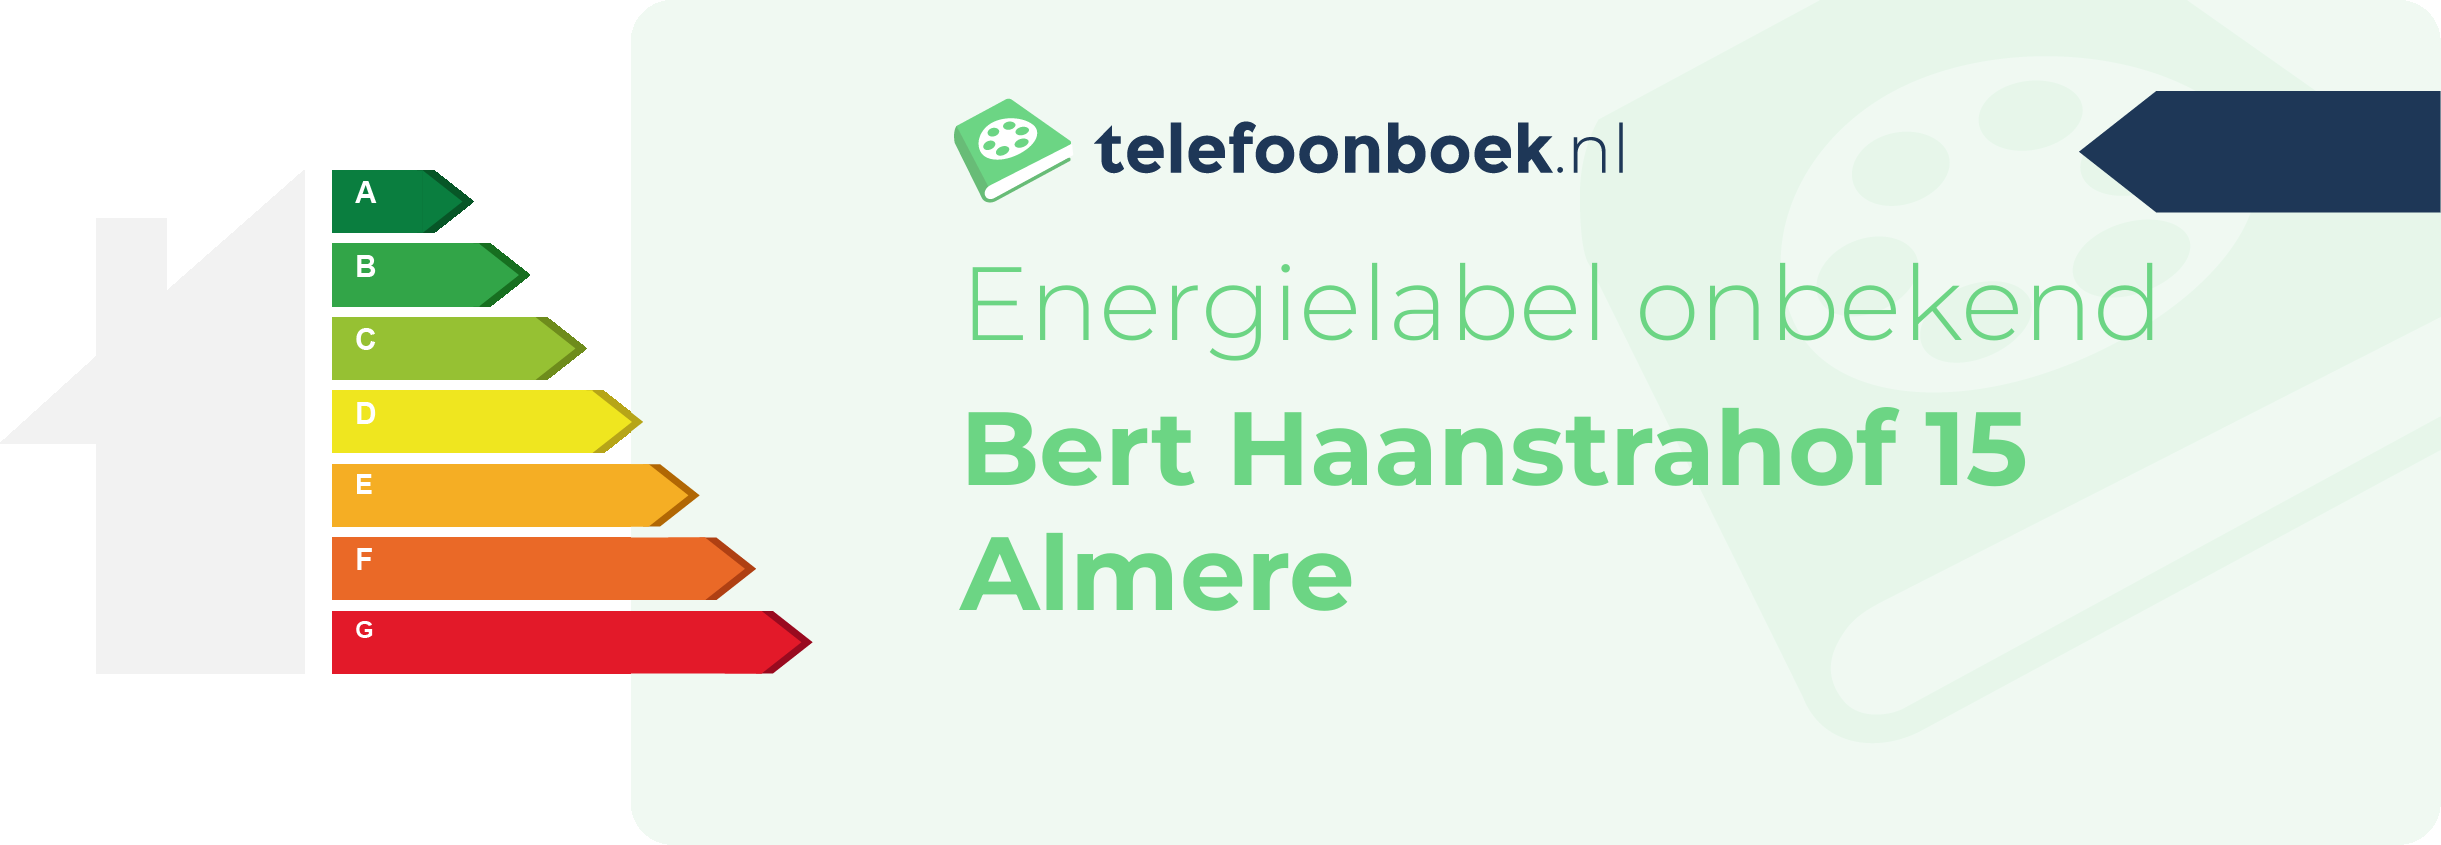 Energielabel Bert Haanstrahof 15 Almere